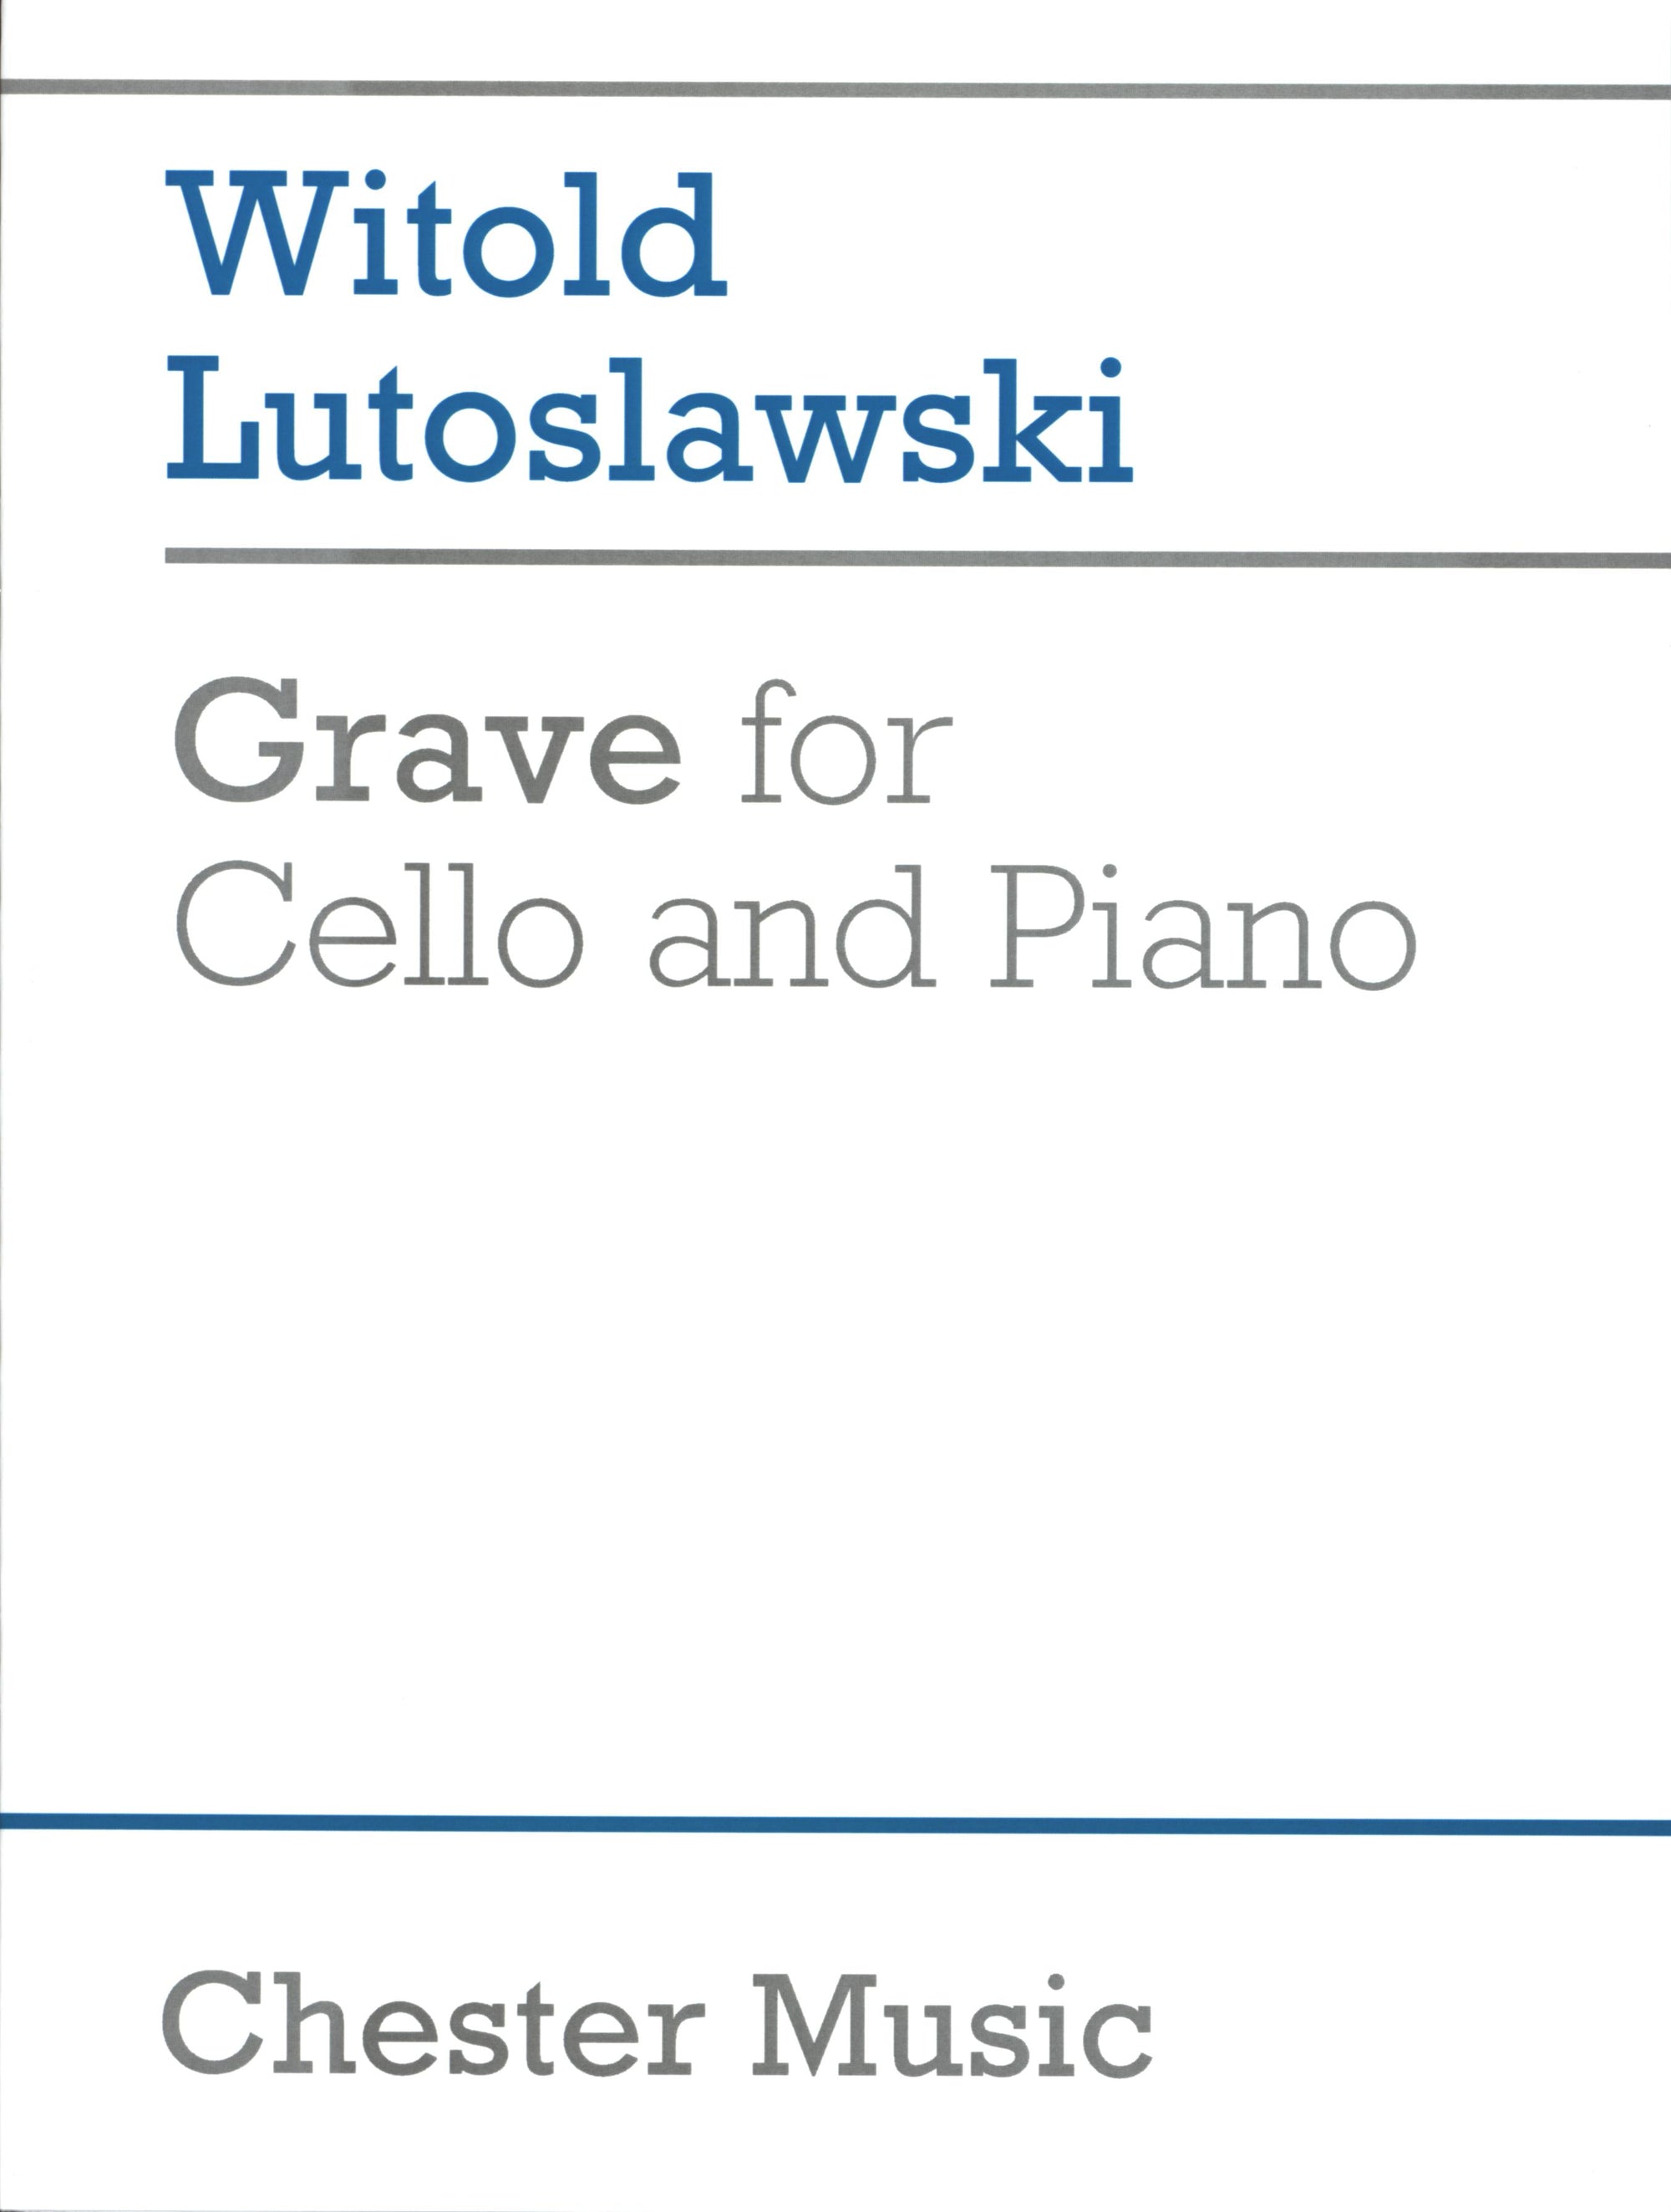 Lutosławski: Grave for Cello and Piano